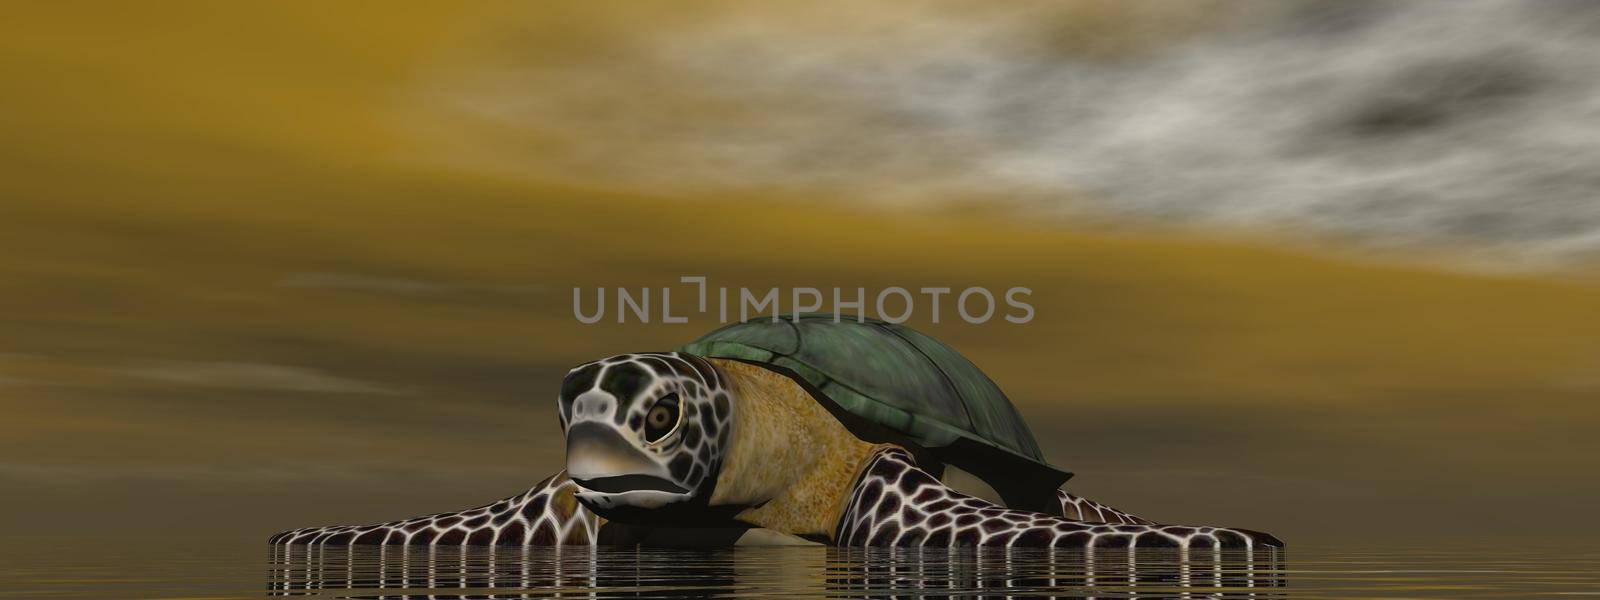 turtle in the ocean - 3d rendering